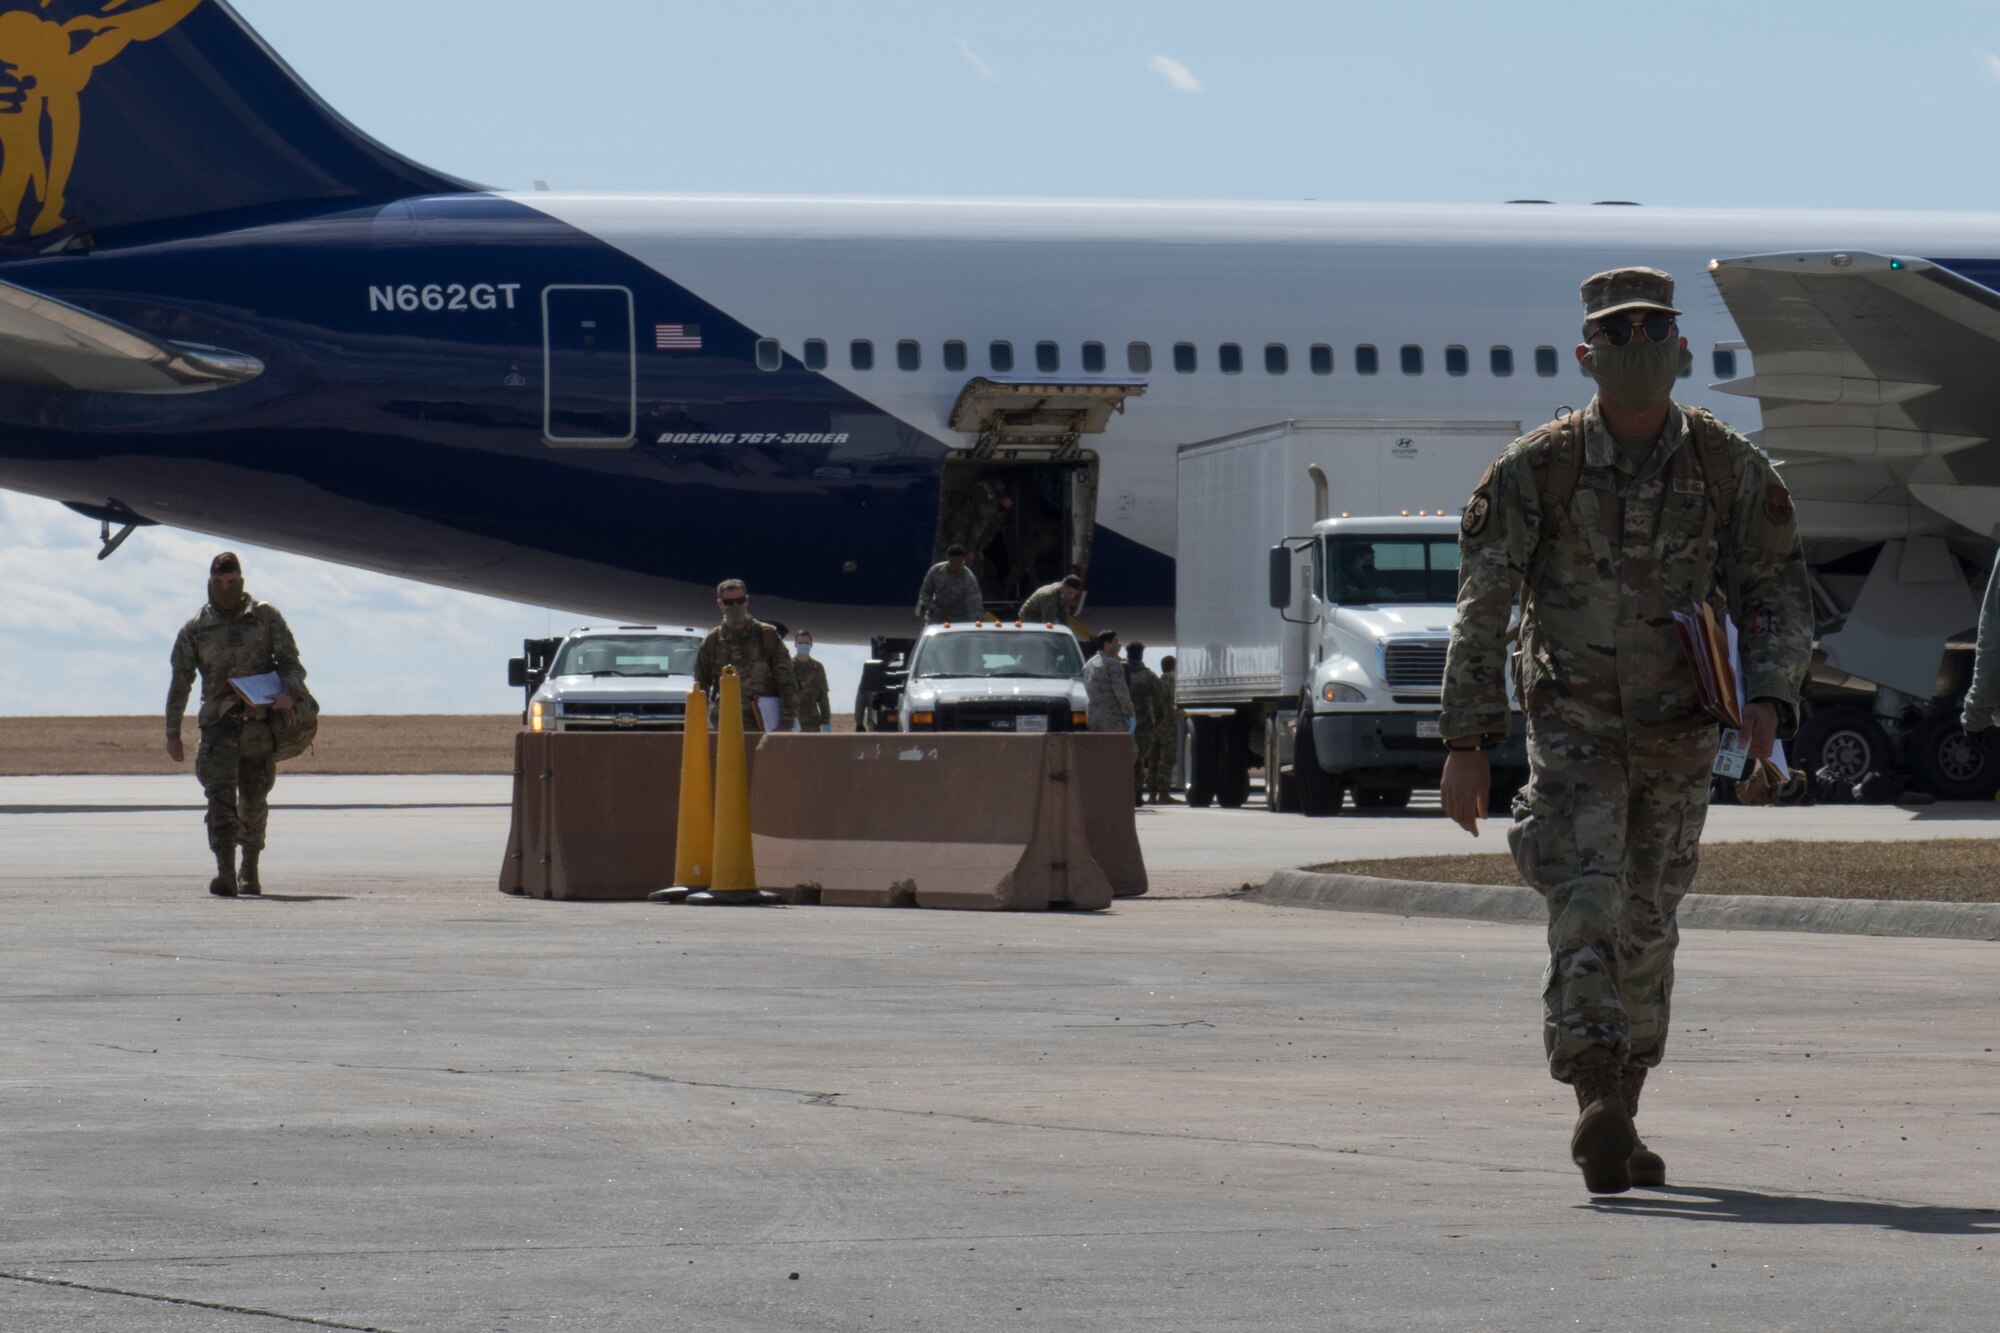 An Airmen walks away from plane